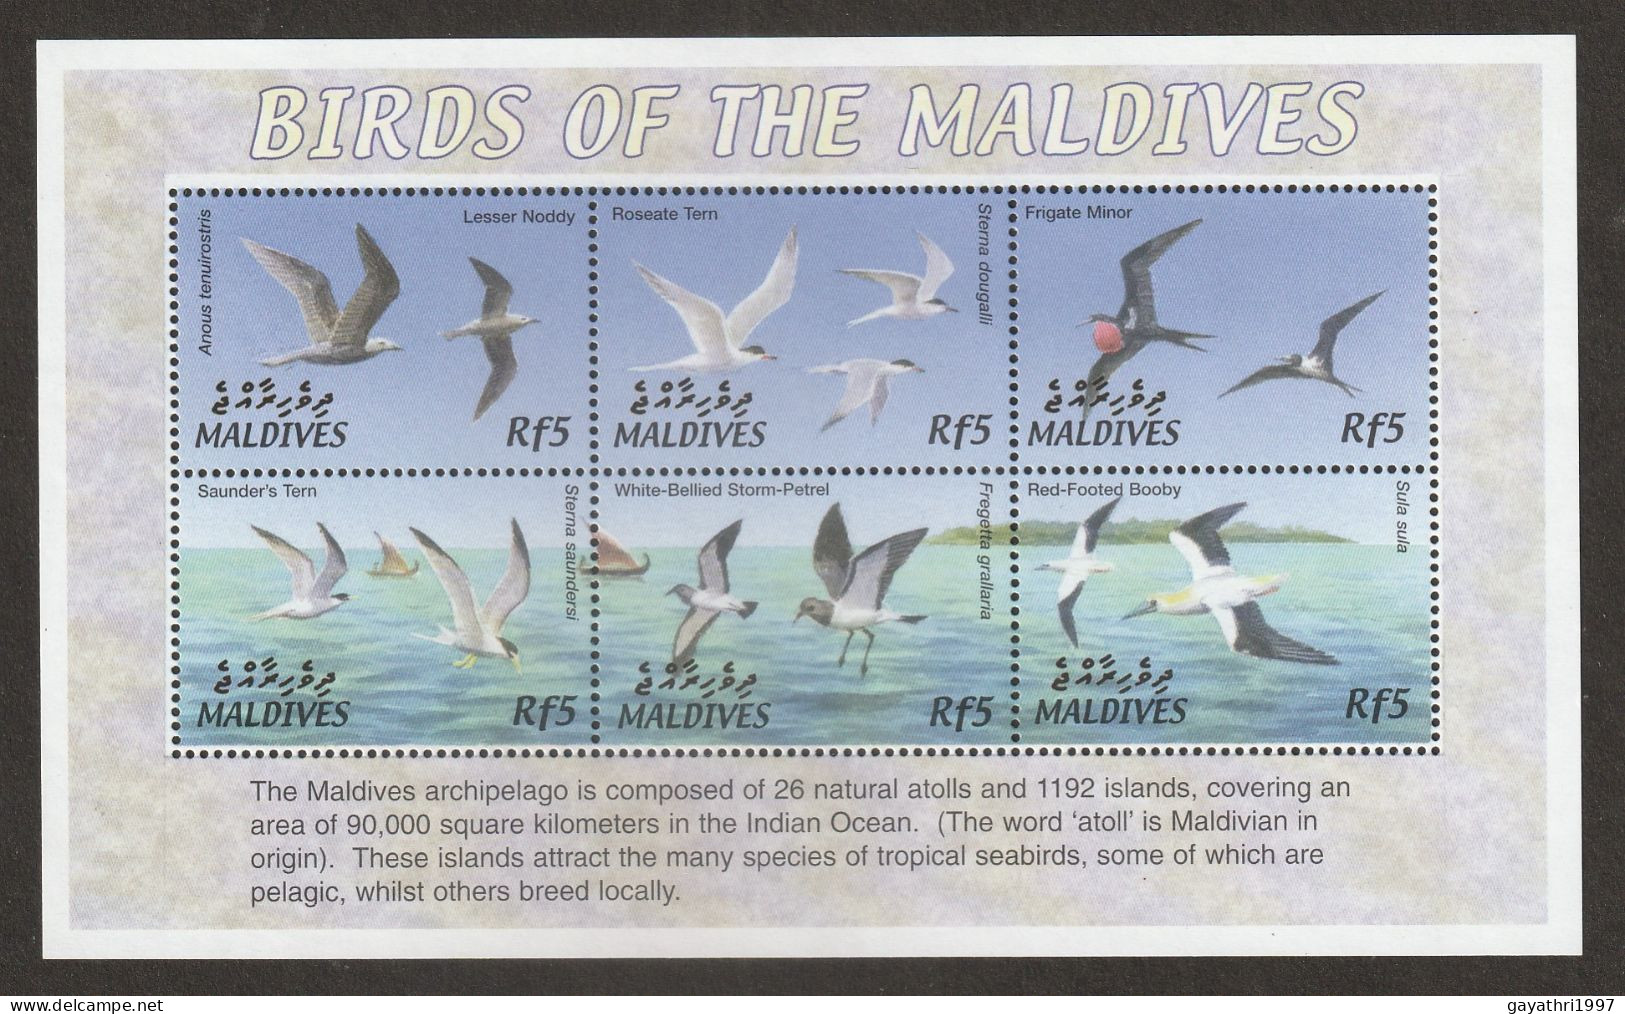 Maldives Birds Miniature Sheet Mint Good Condition (S-60) - Pics & Grimpeurs